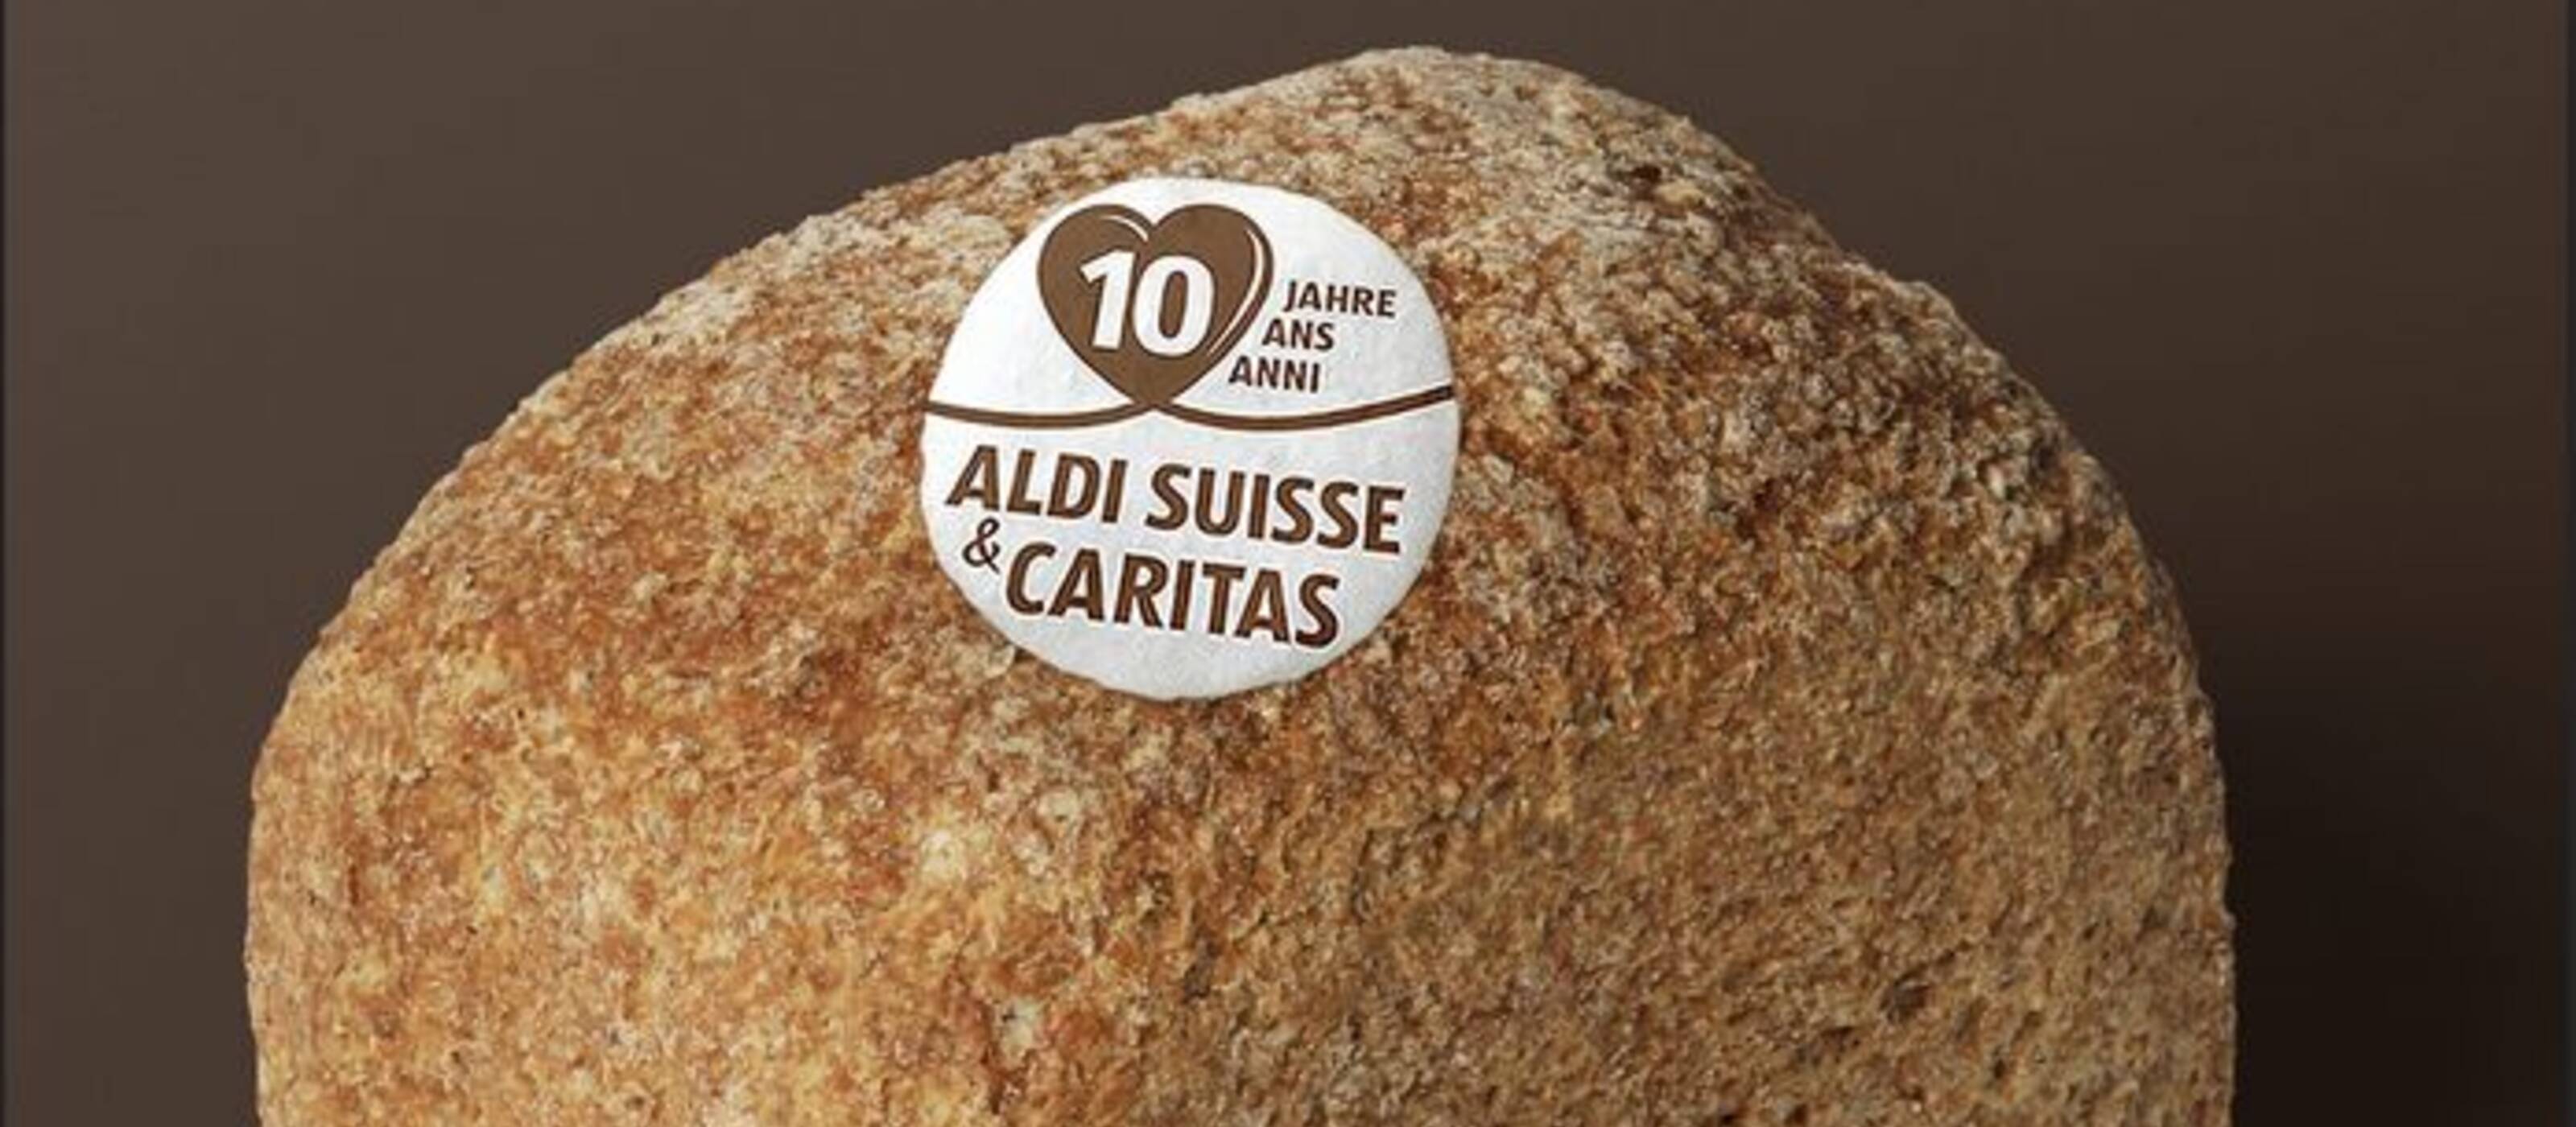 Für jedes verkaufte Brot mit der essbaren Partnerschafts-Oblate spendet ALDI einen Franken an Caritas.